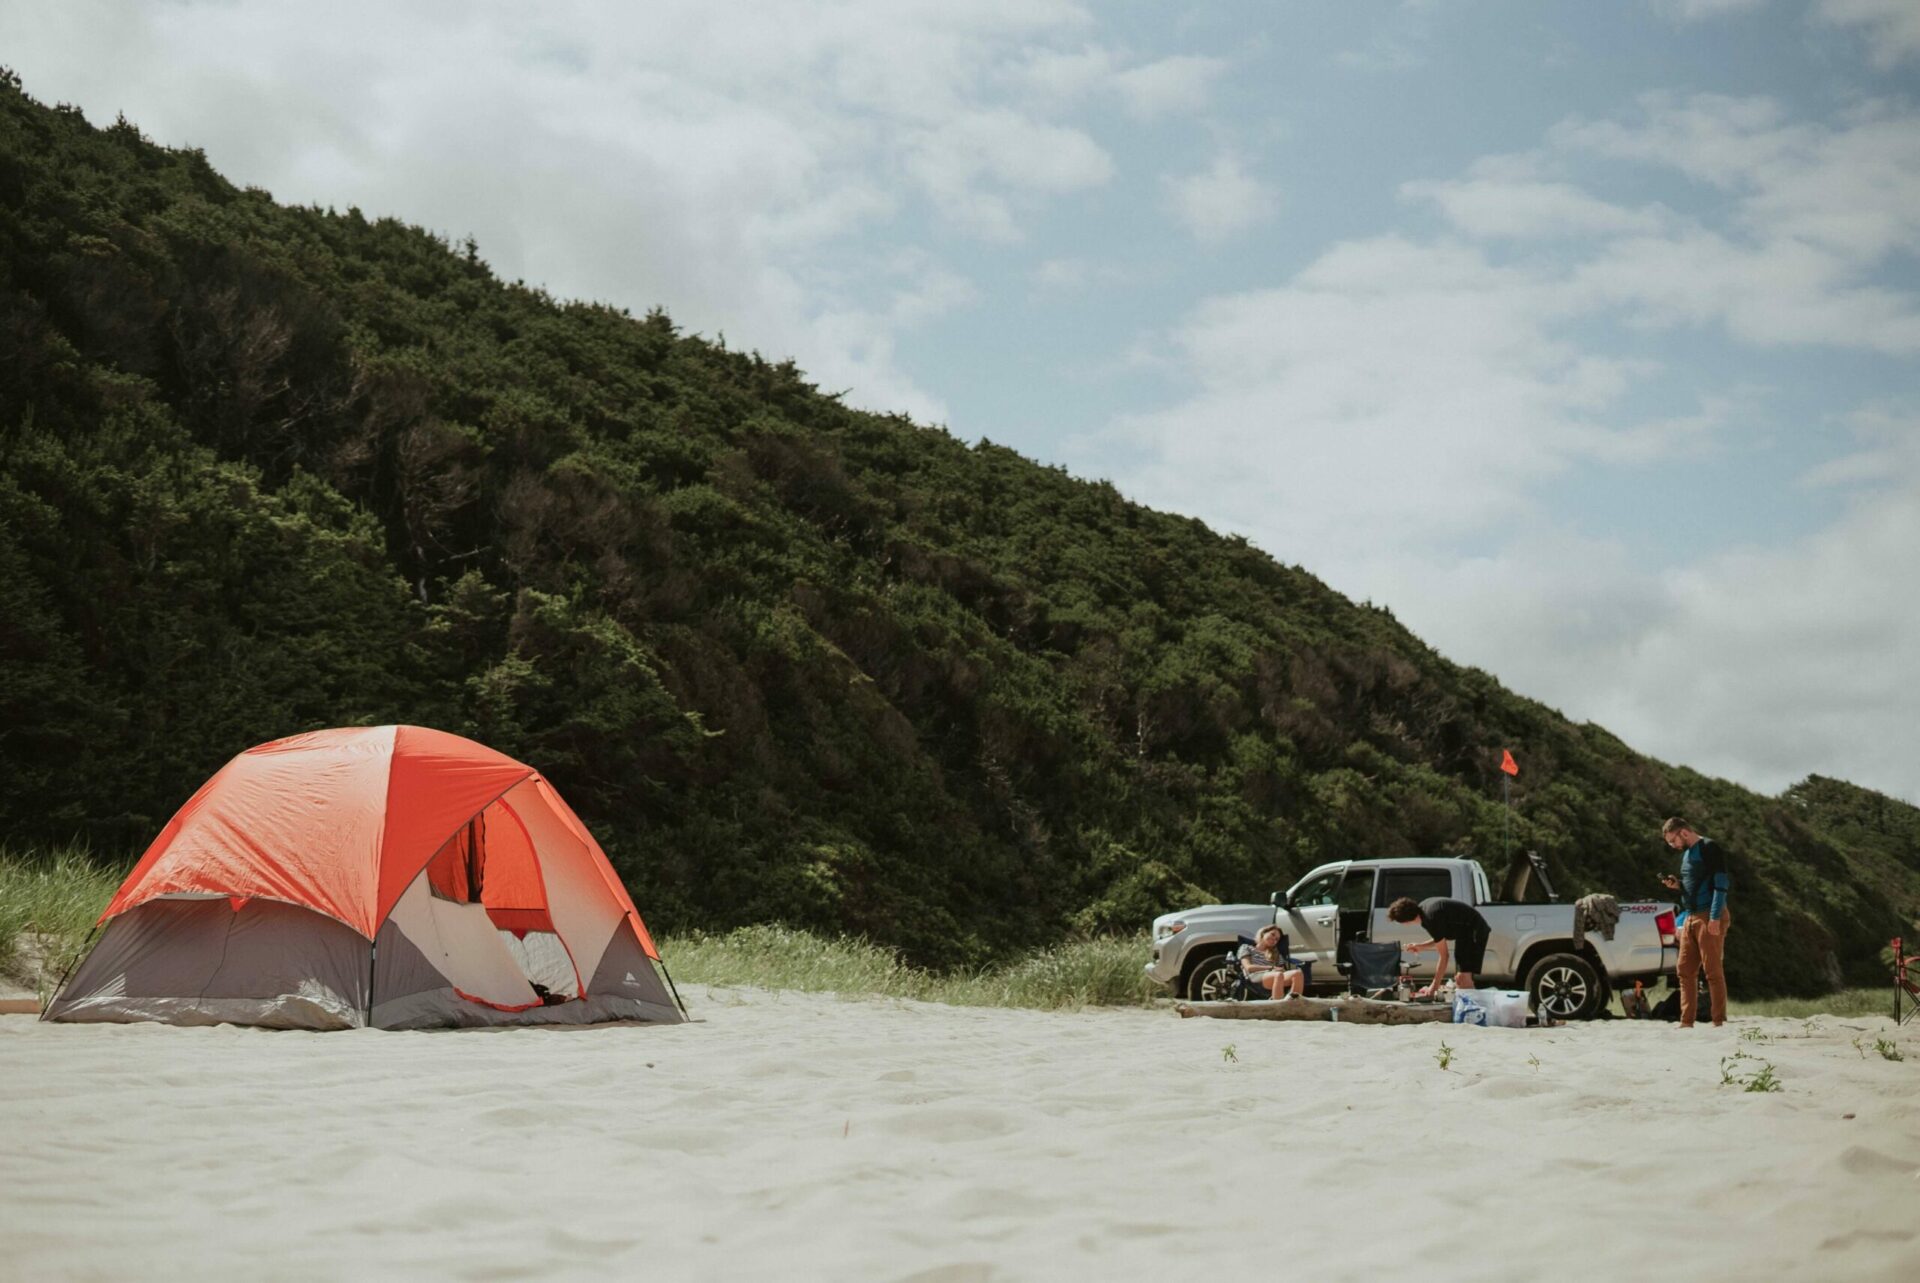 Pick-up posé sur le sable à côté d'une tente de camping